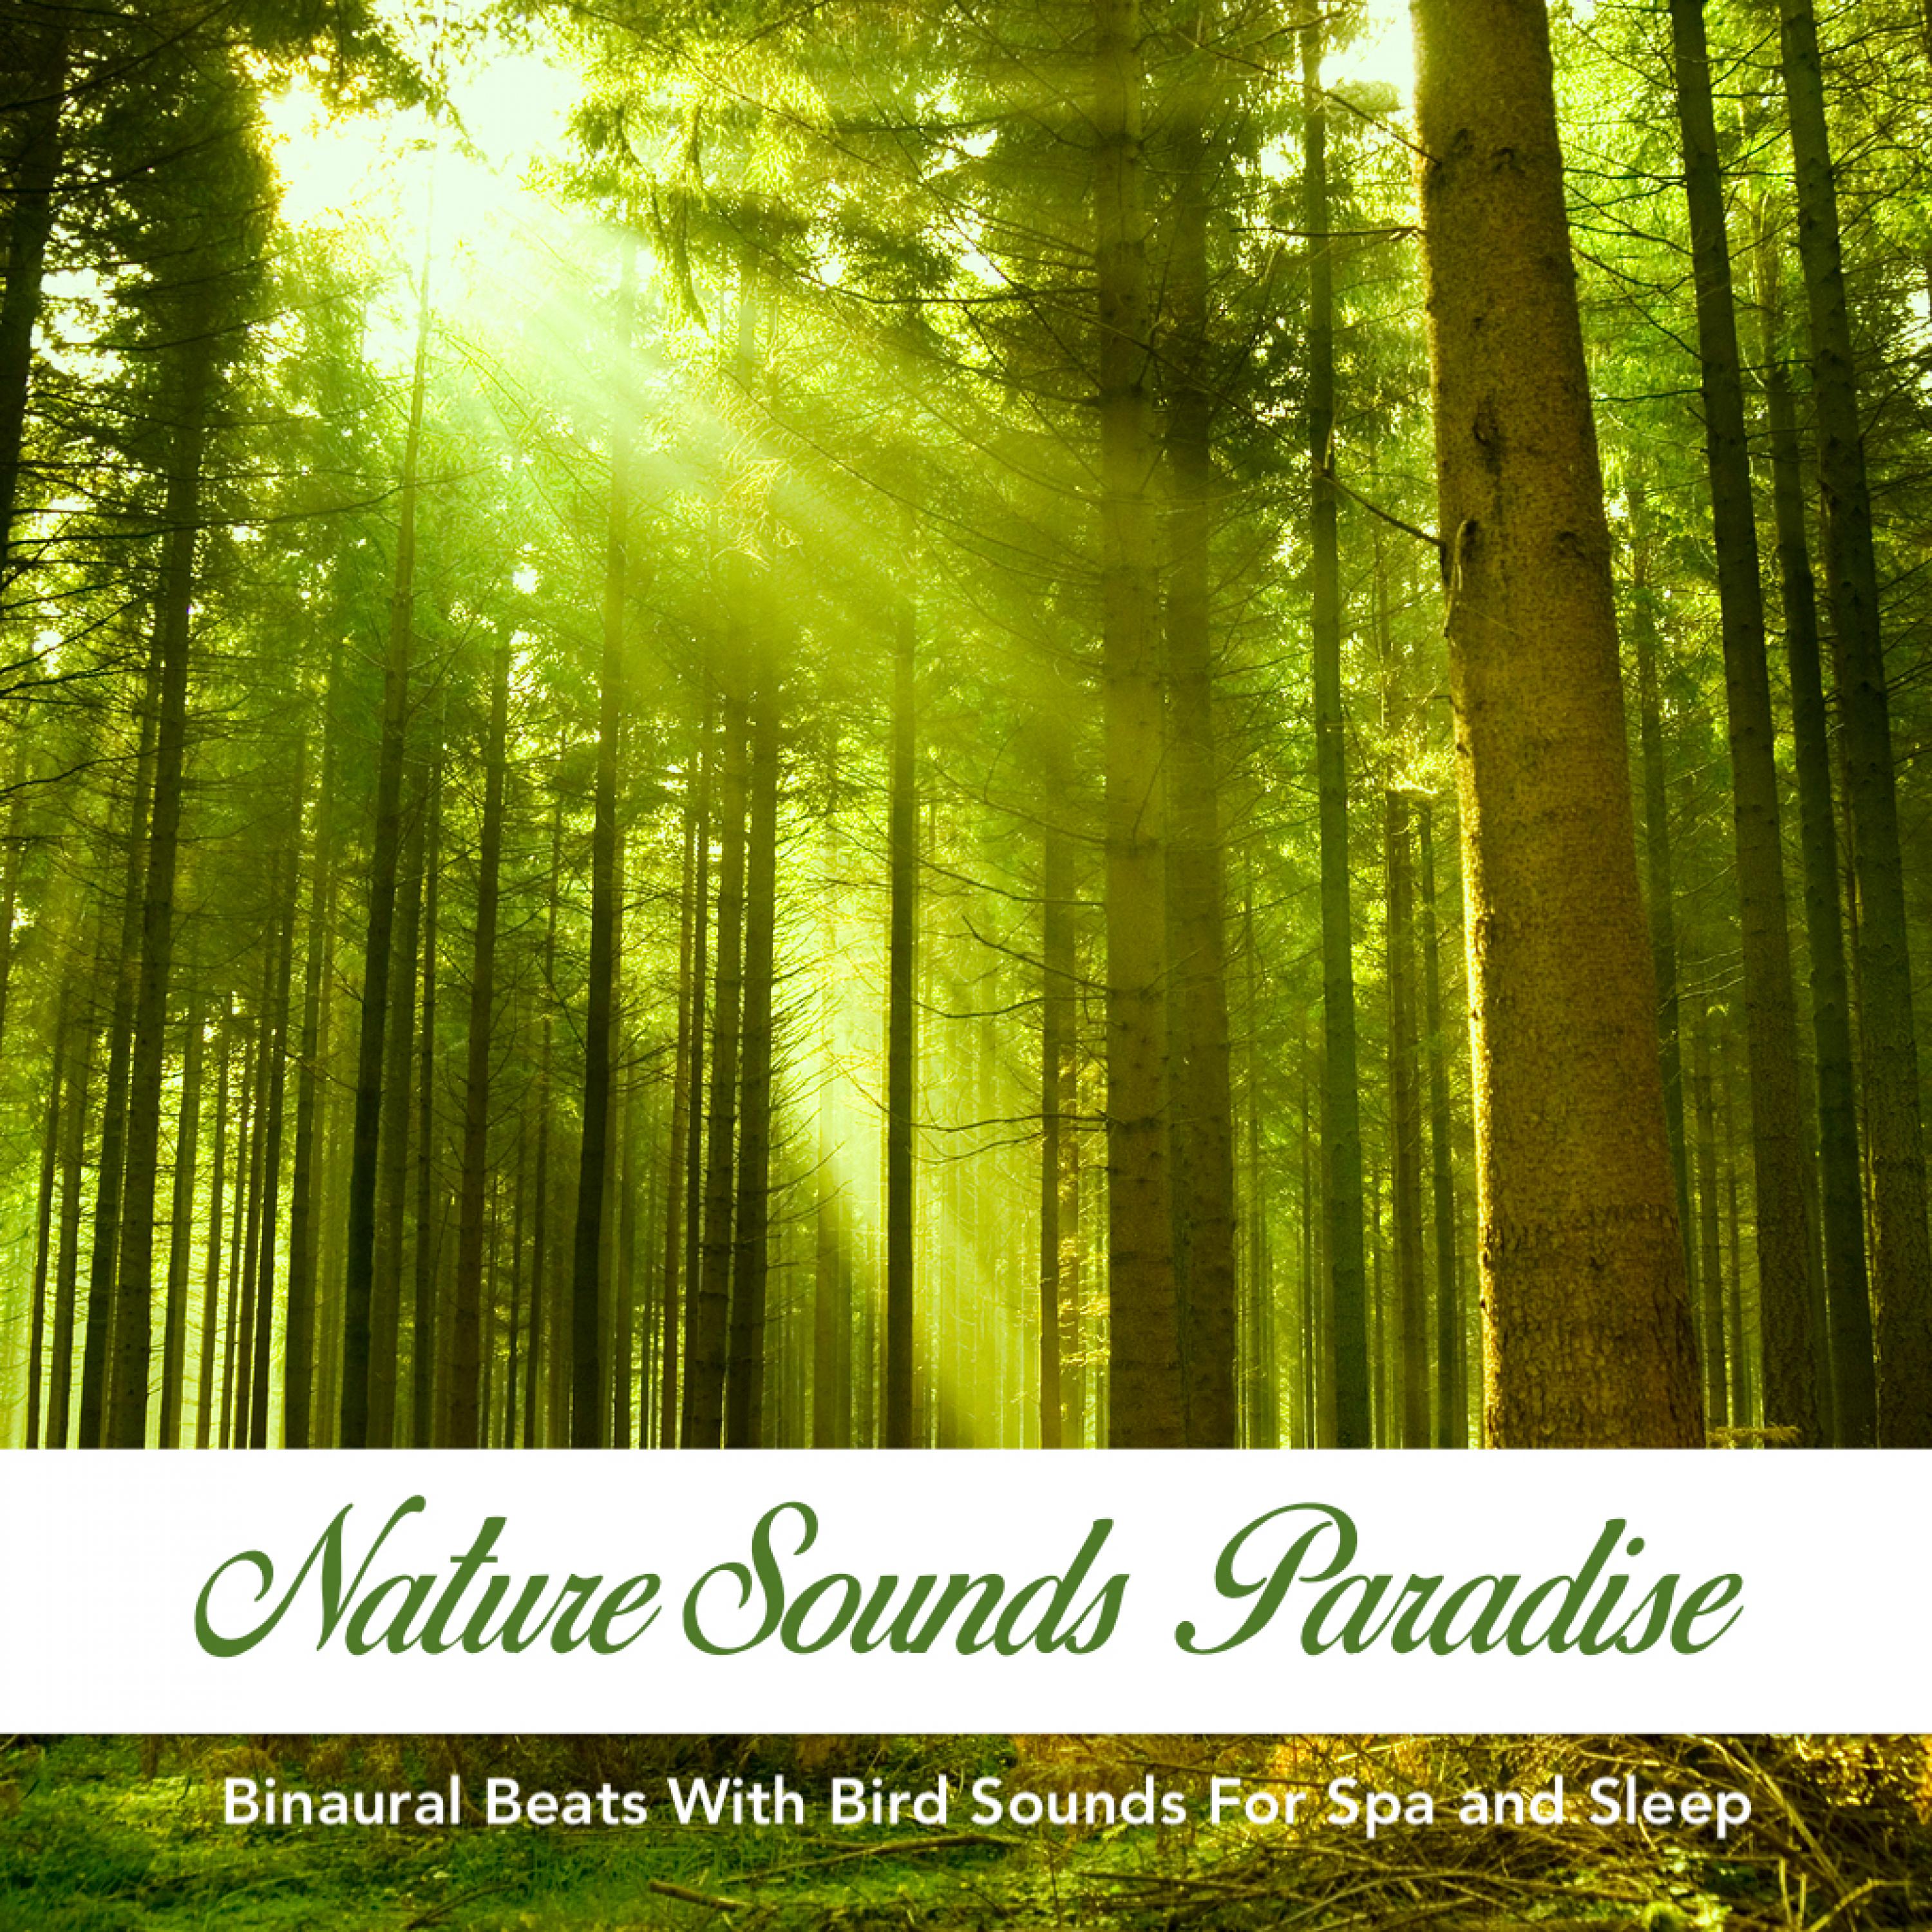 Nature Sounds Paradise